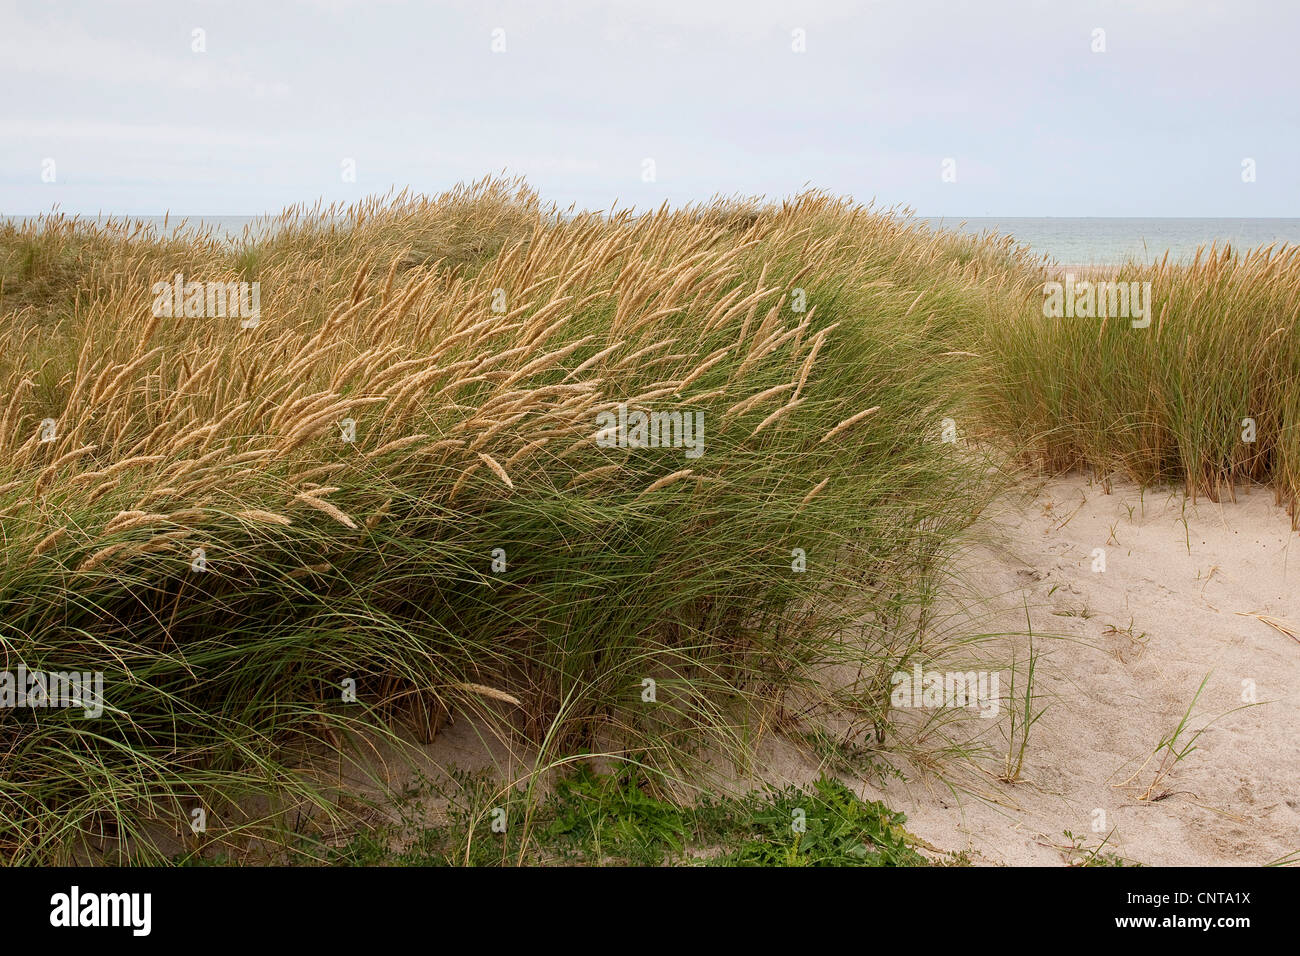 Strand von Grass, Dünengebieten Grass (Ammophila Arenaria), auf Sanddünen, Deutschland Stockfoto